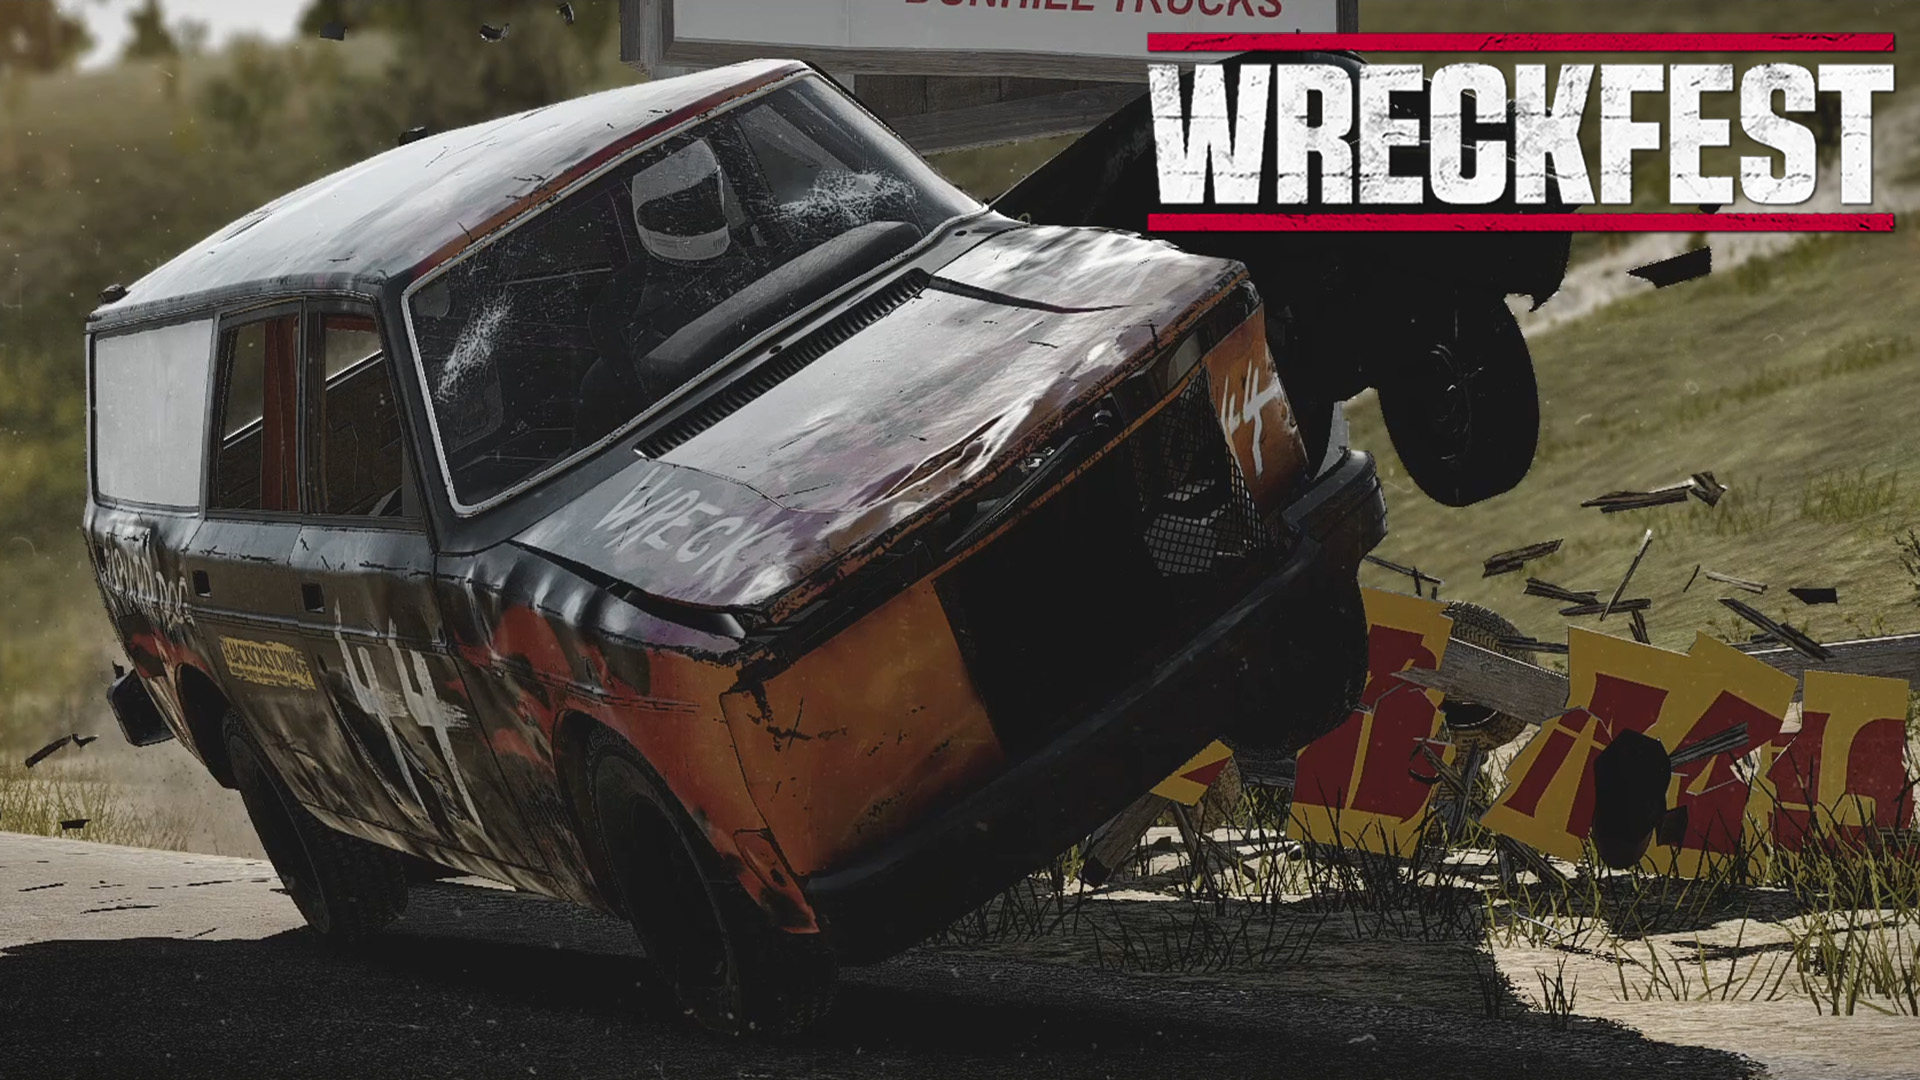 Wreckfest #20.